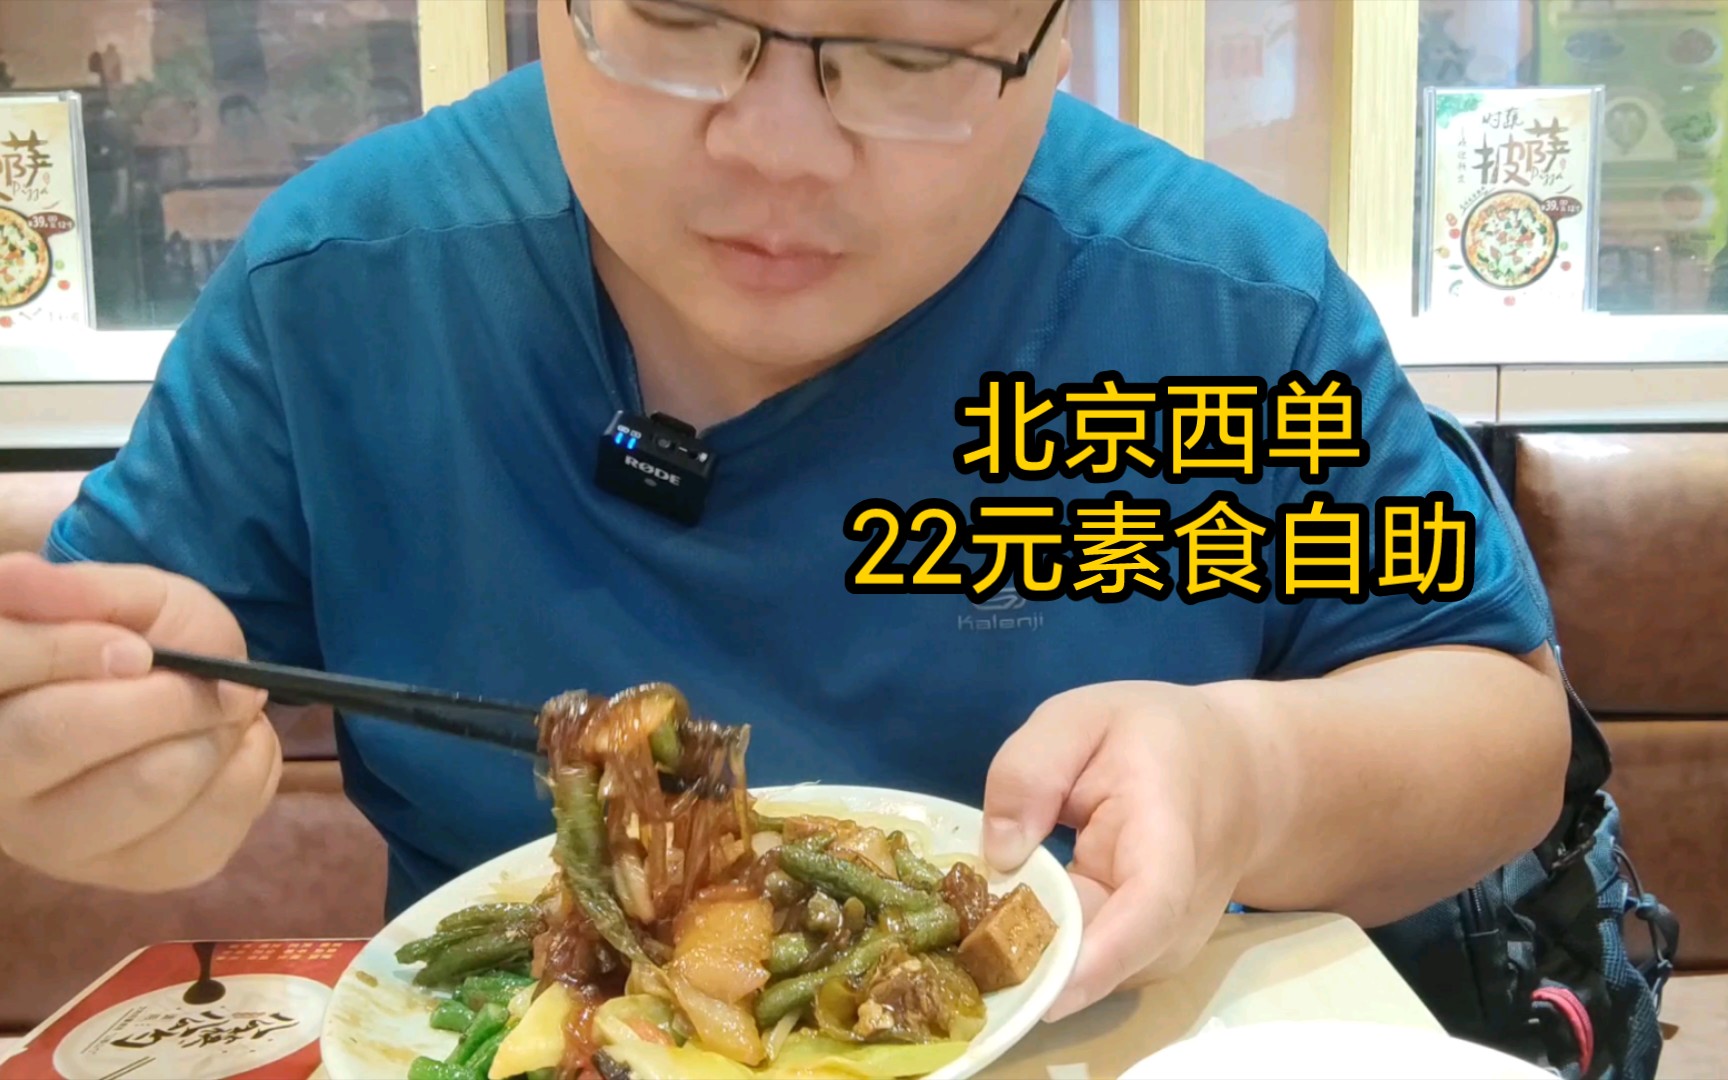 北京西单22元素食自助，发现了很好吃的豆腐炖粉条！单盛了一大盘来吃